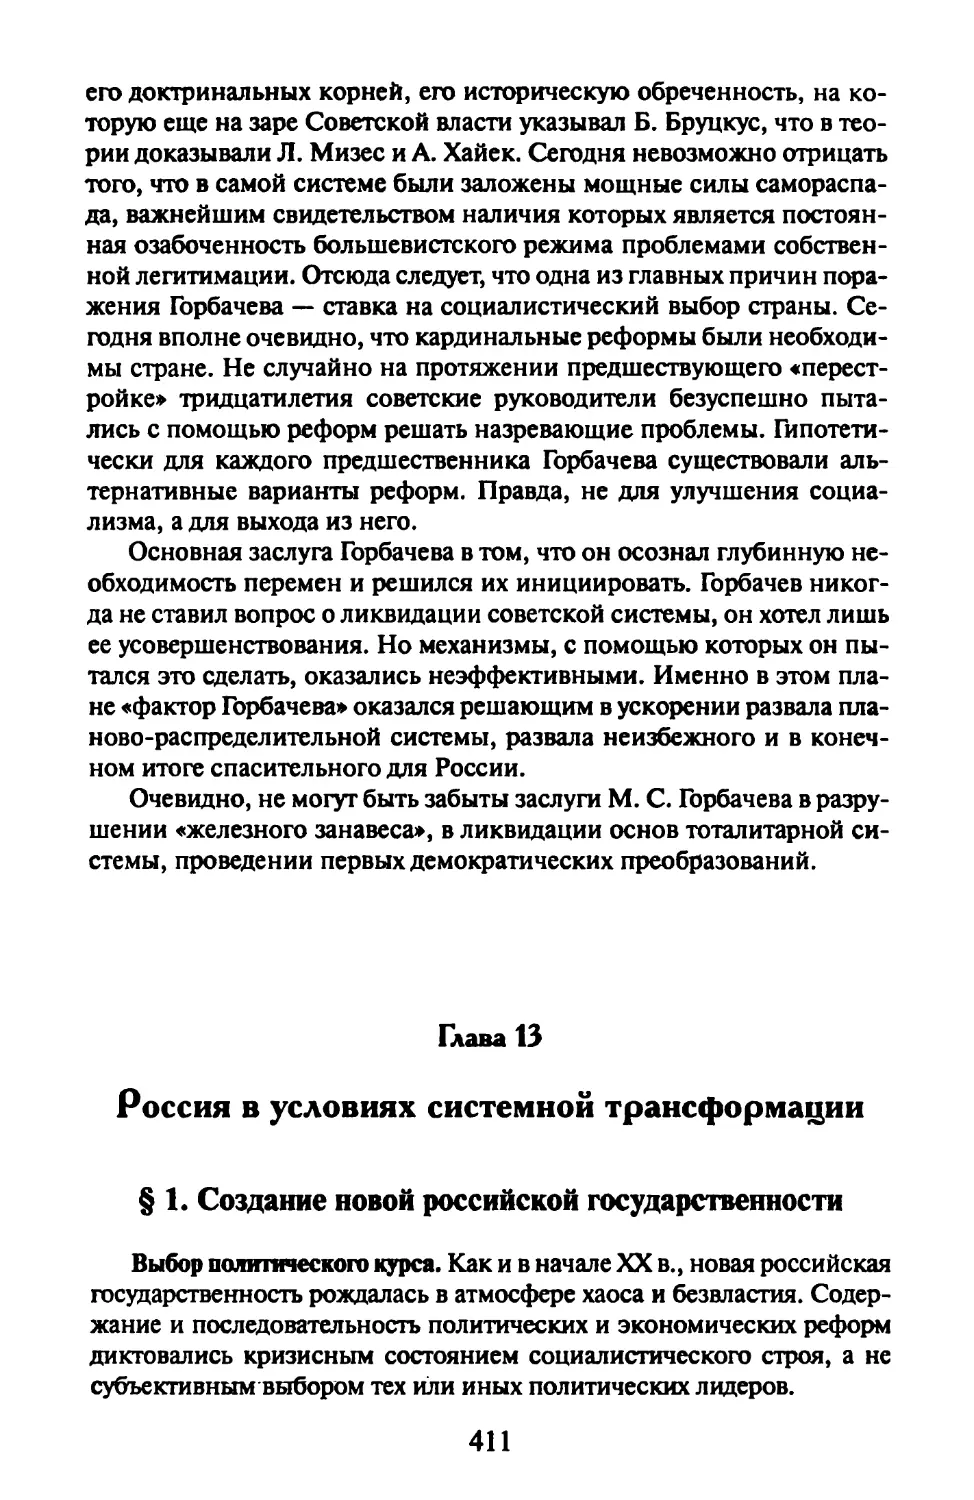 Глава 13. Россия в условиях системной трансформации